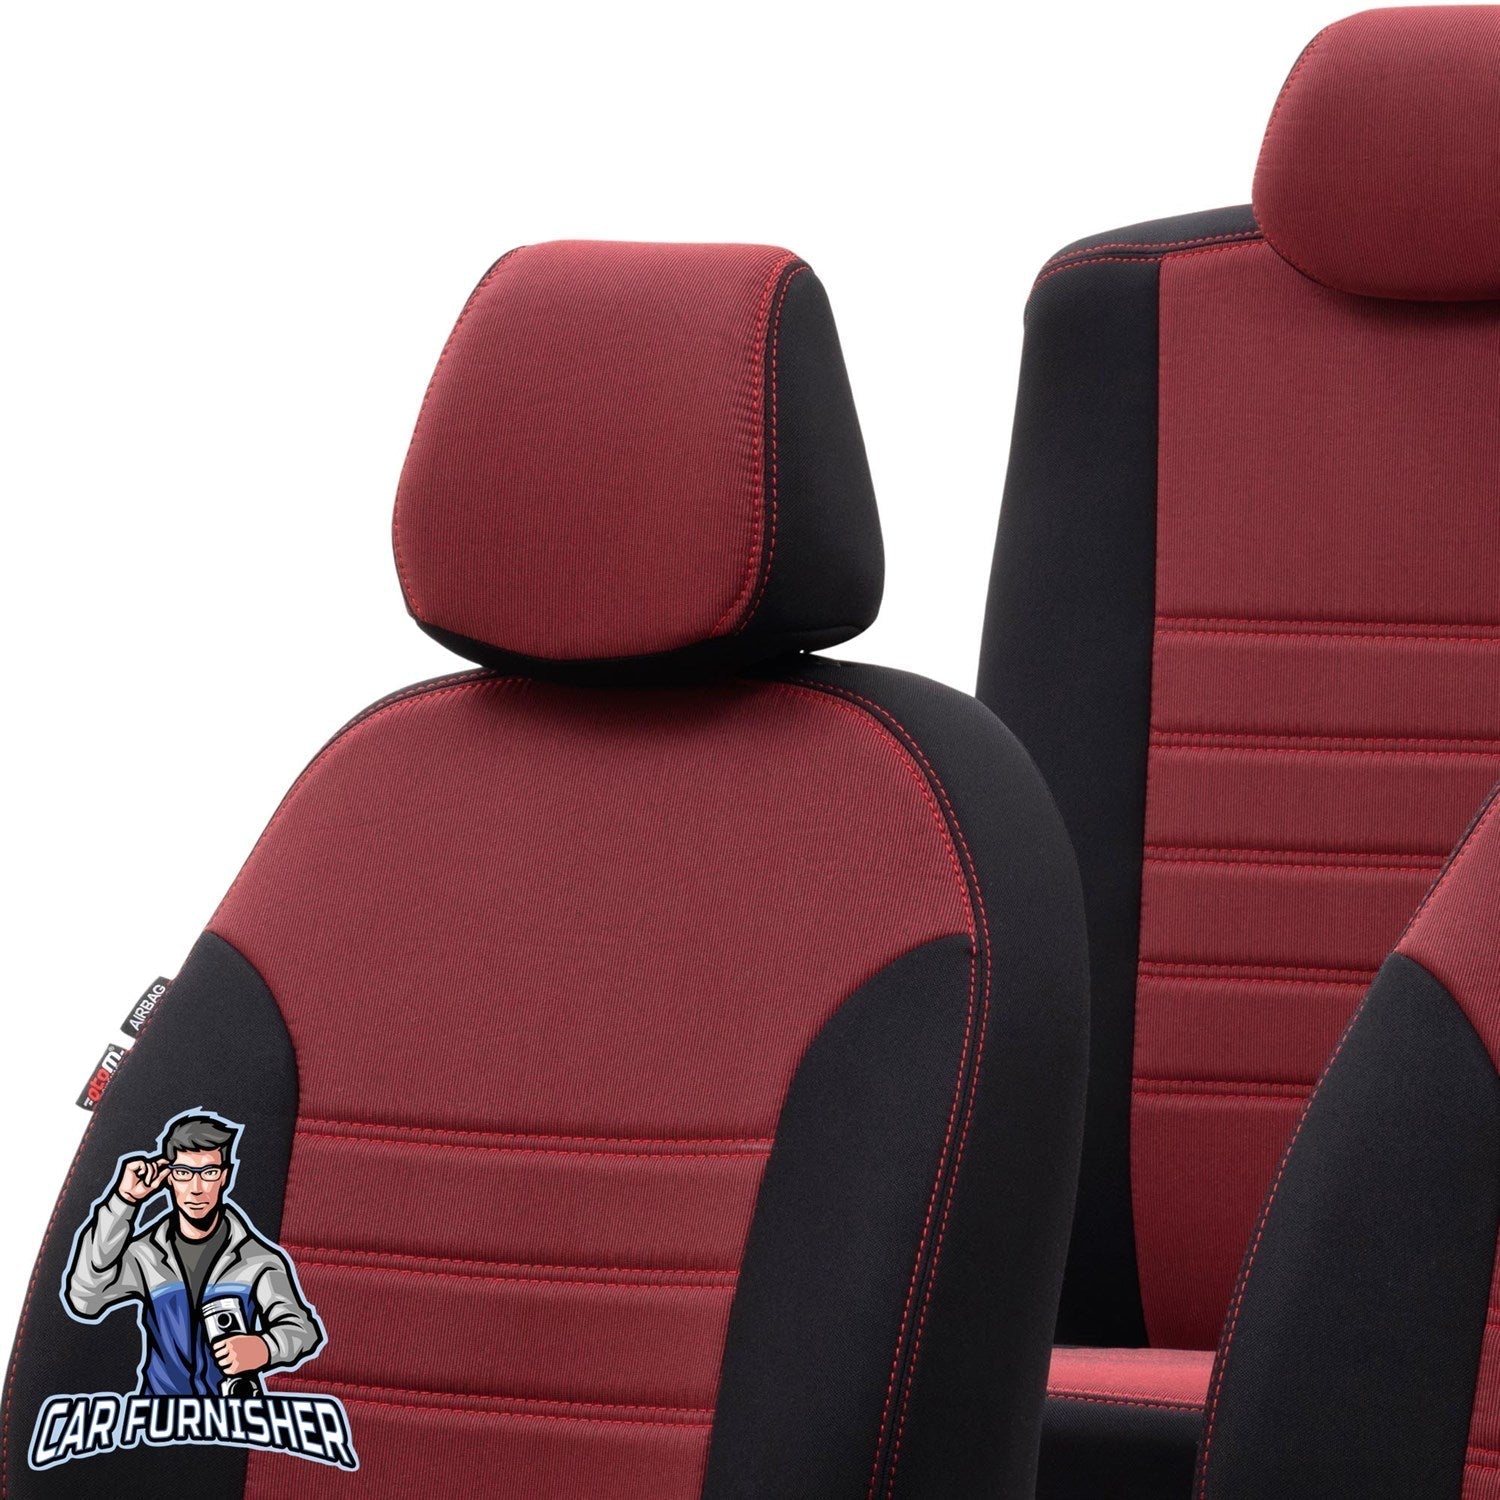 Audi Q7 Seat Cover Original Jacquard Design Red Jacquard Fabric